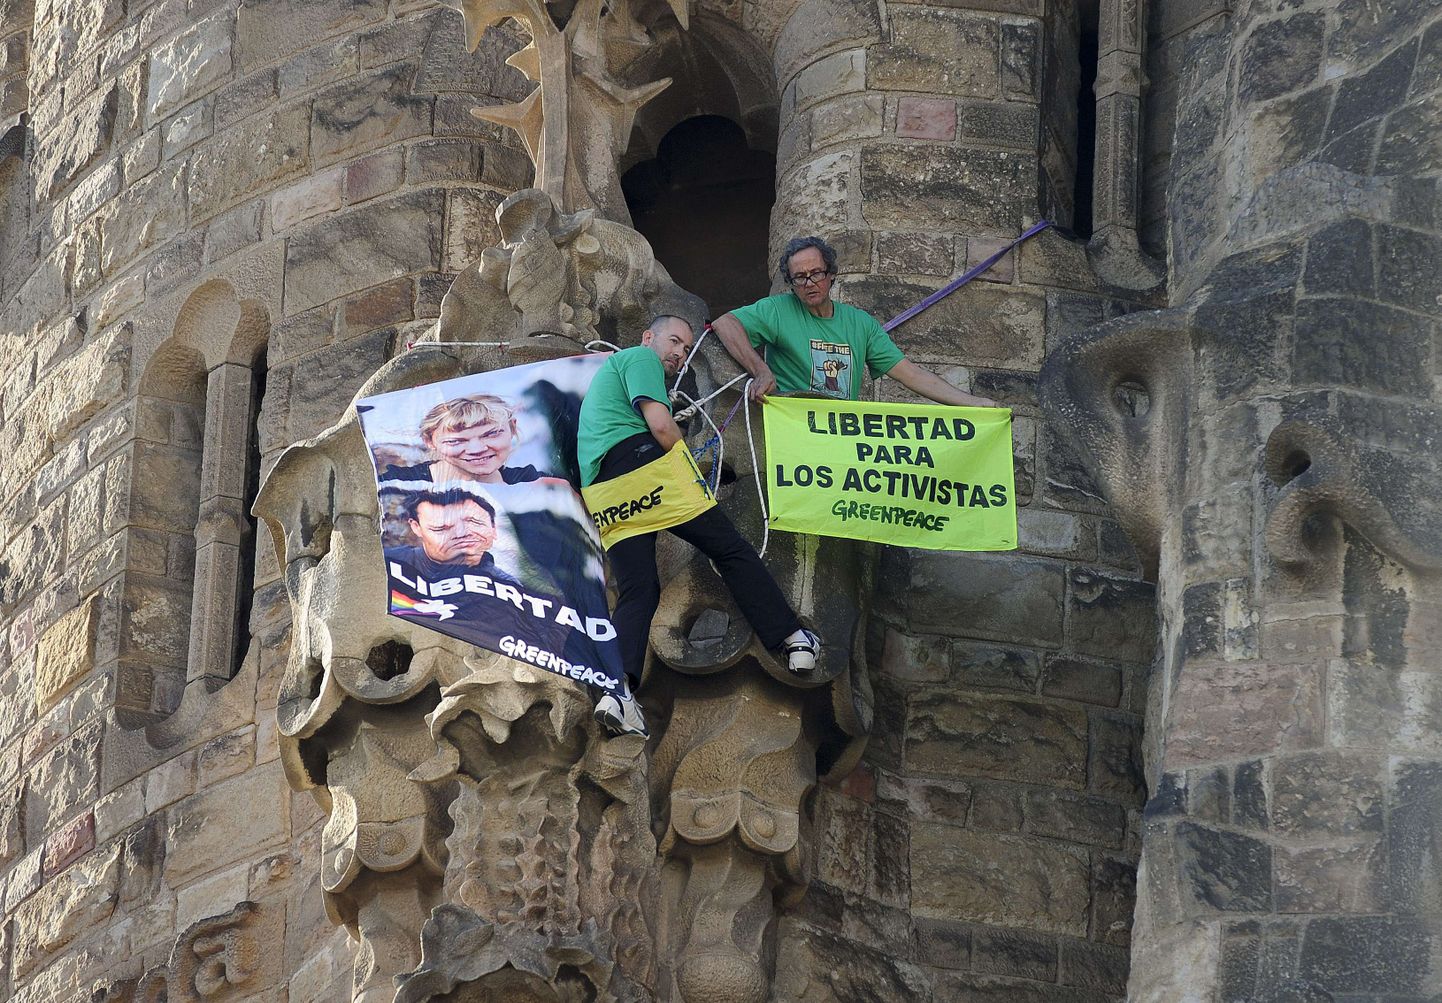 Greenpeace'i aktivistid nõudsid kaaslaste vabastamist Barcelonas asuvale Sagrada Familiale riputatud loosungitega 8. novembril.